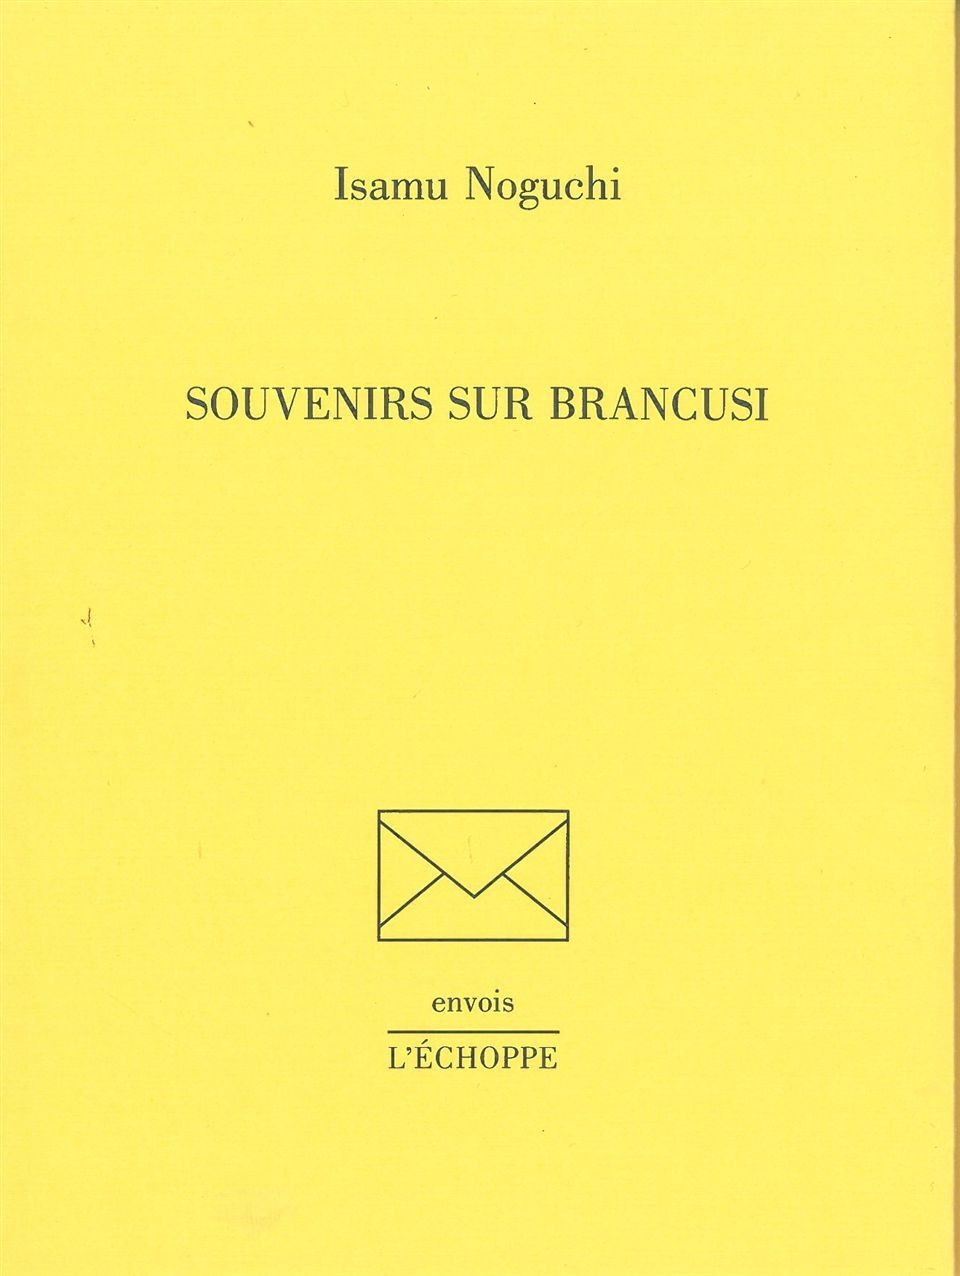 Carte Souvenirs sur Brancusi Isamu Noguchi